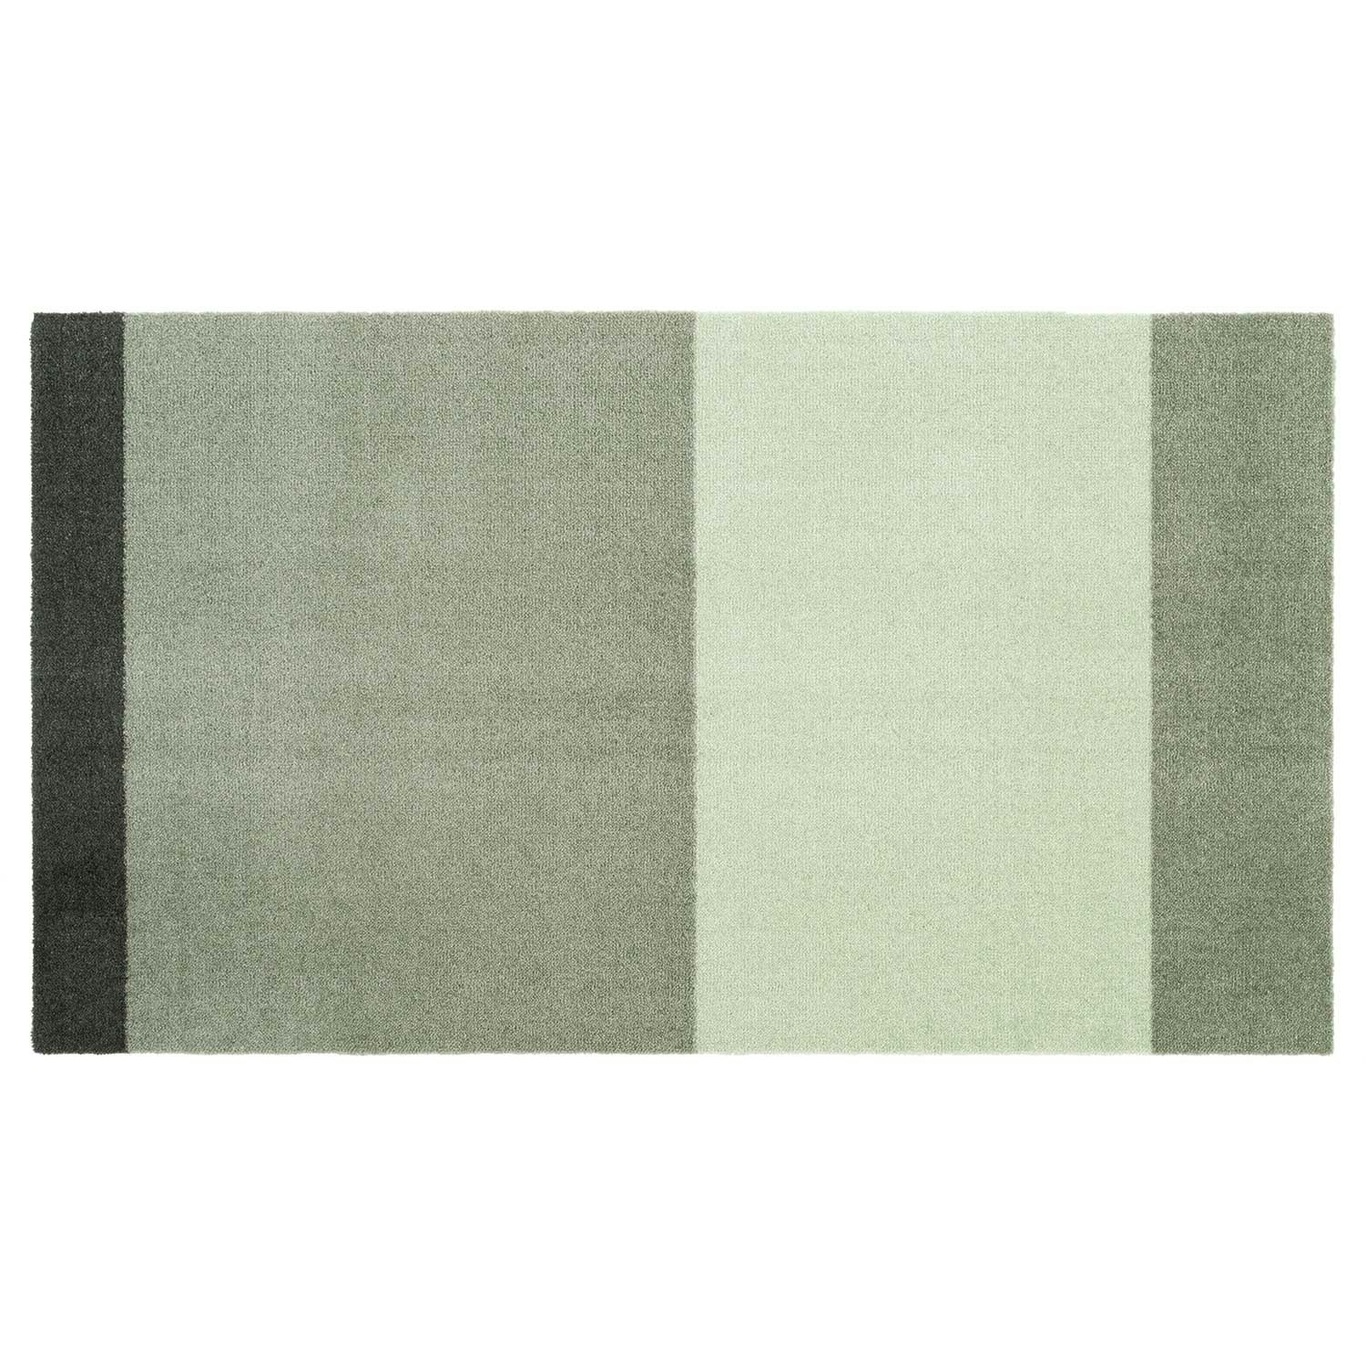 Stripes Teppich Hellgrün / Dunkelgrün, 67x120 cm